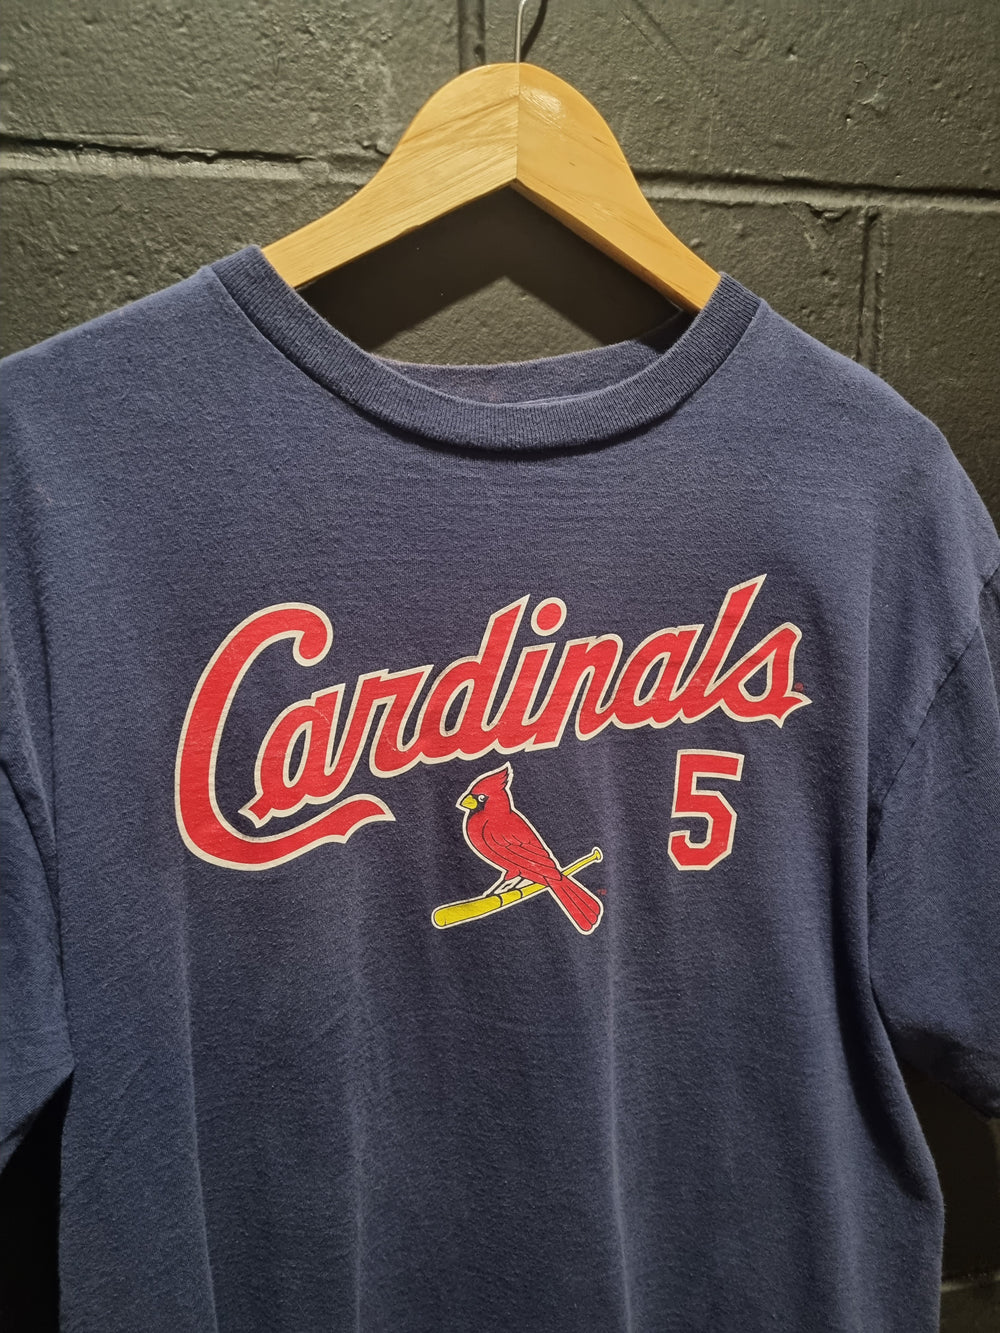 St Louis Cardinals Pujols Genuine Merchandise Large